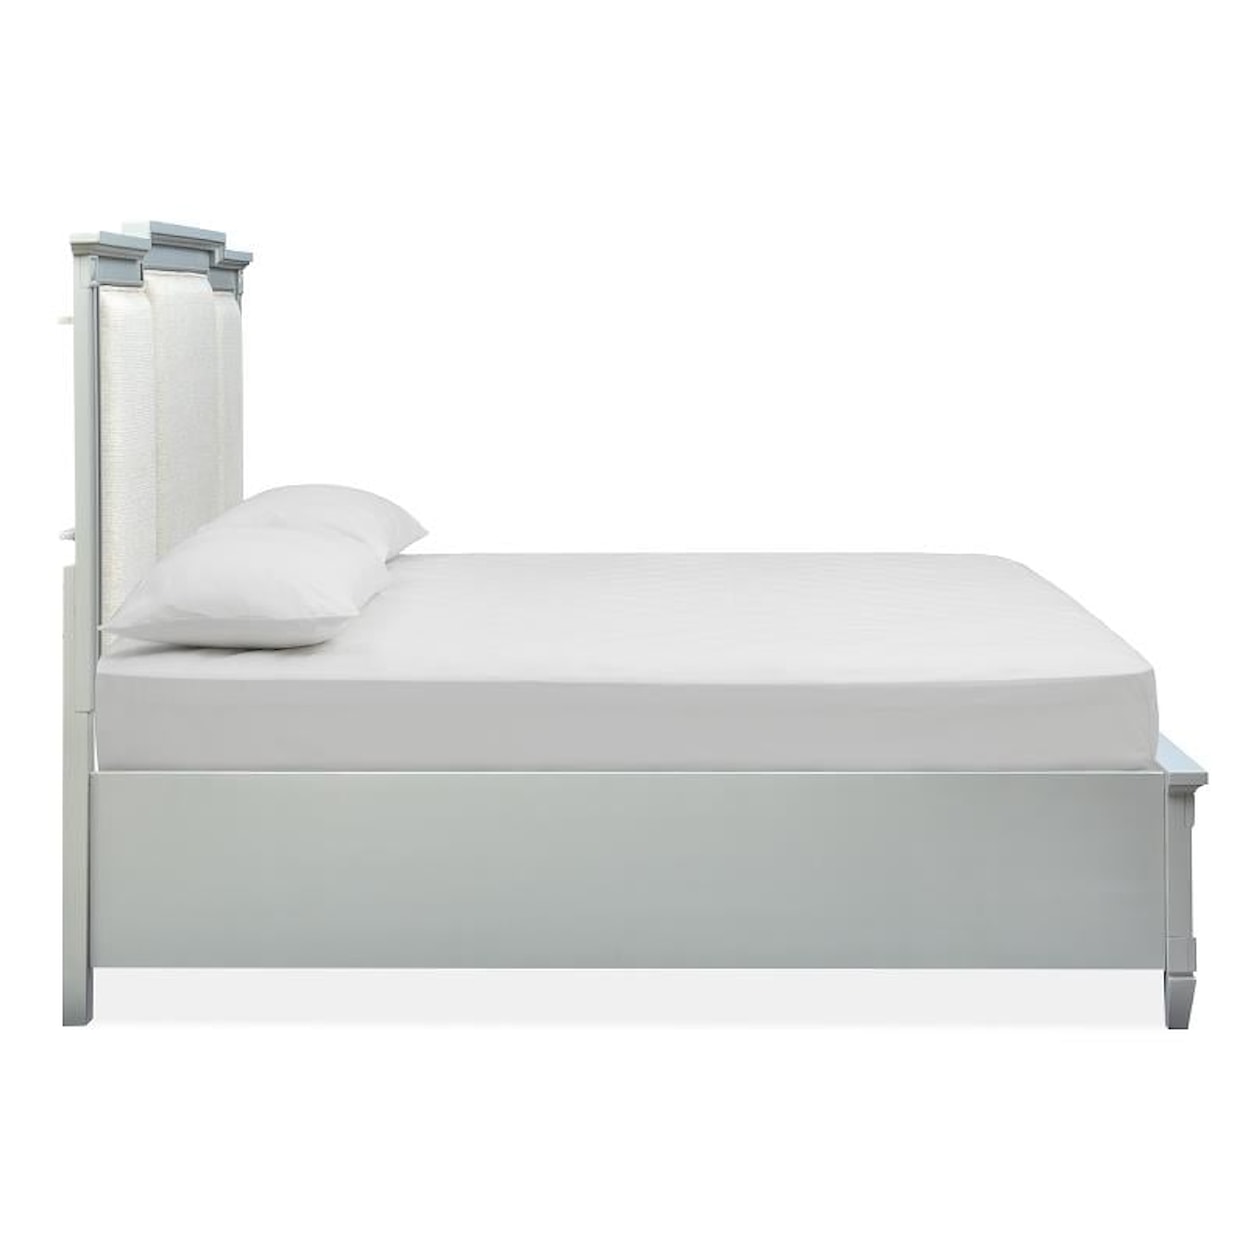 Magnussen Home Glenbrook Bedroom Queen Storage Bed w/Upholstered Headboard